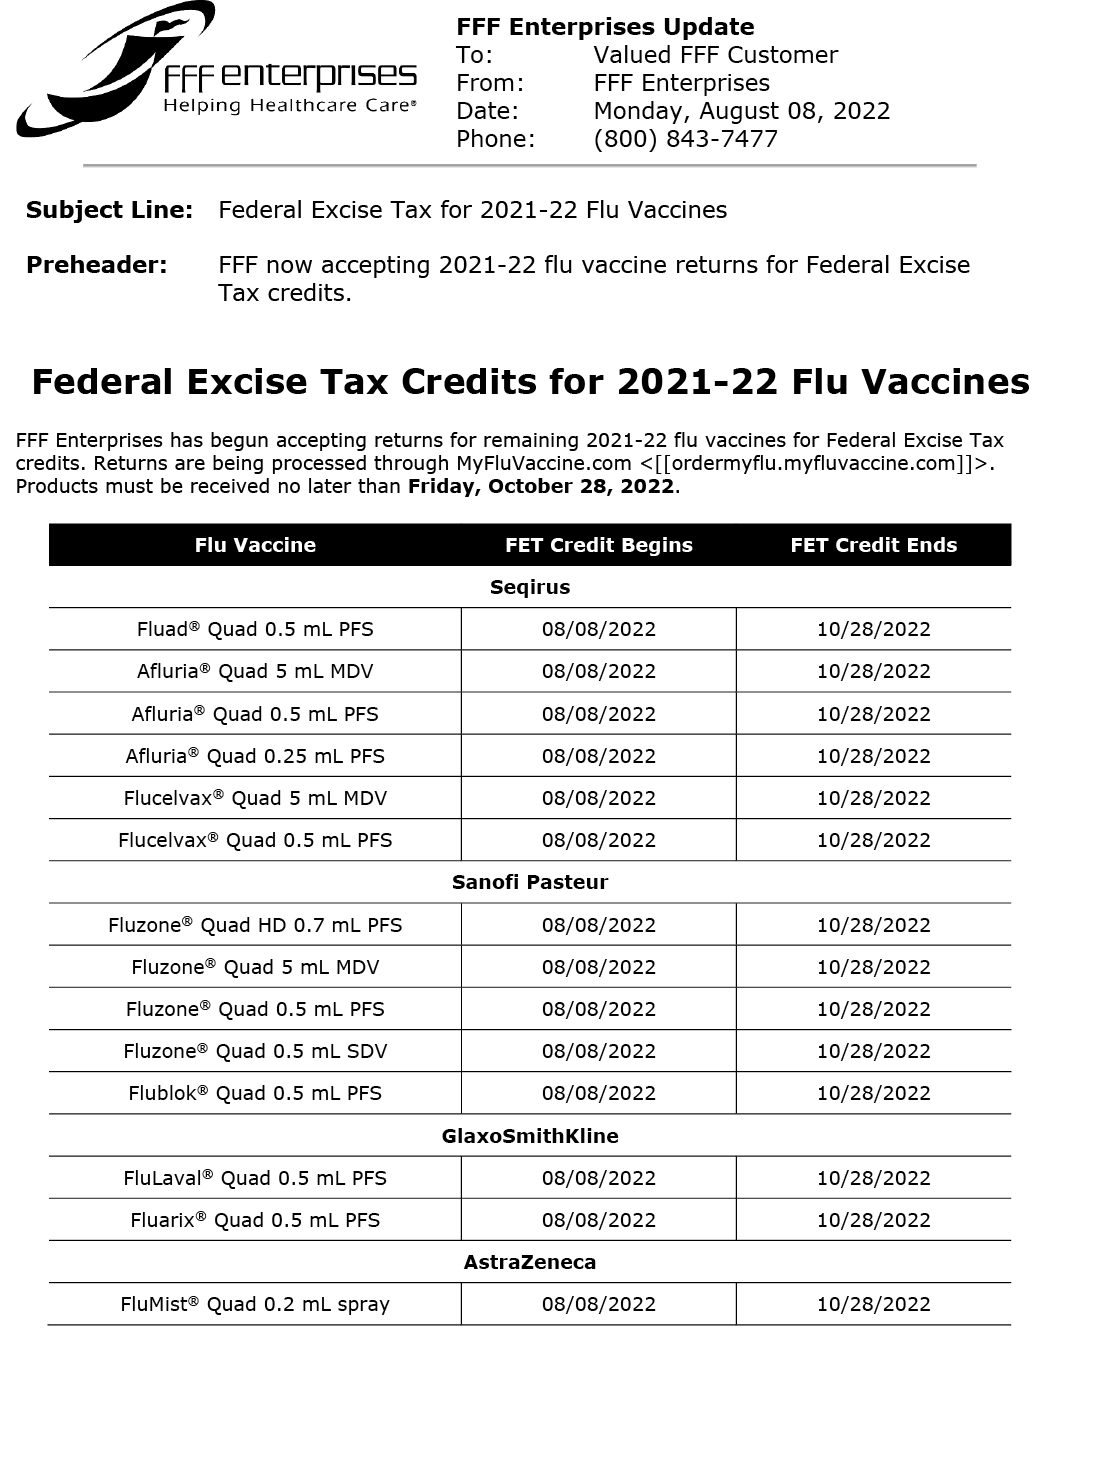 FFF Enterprises federal excise tax refund information